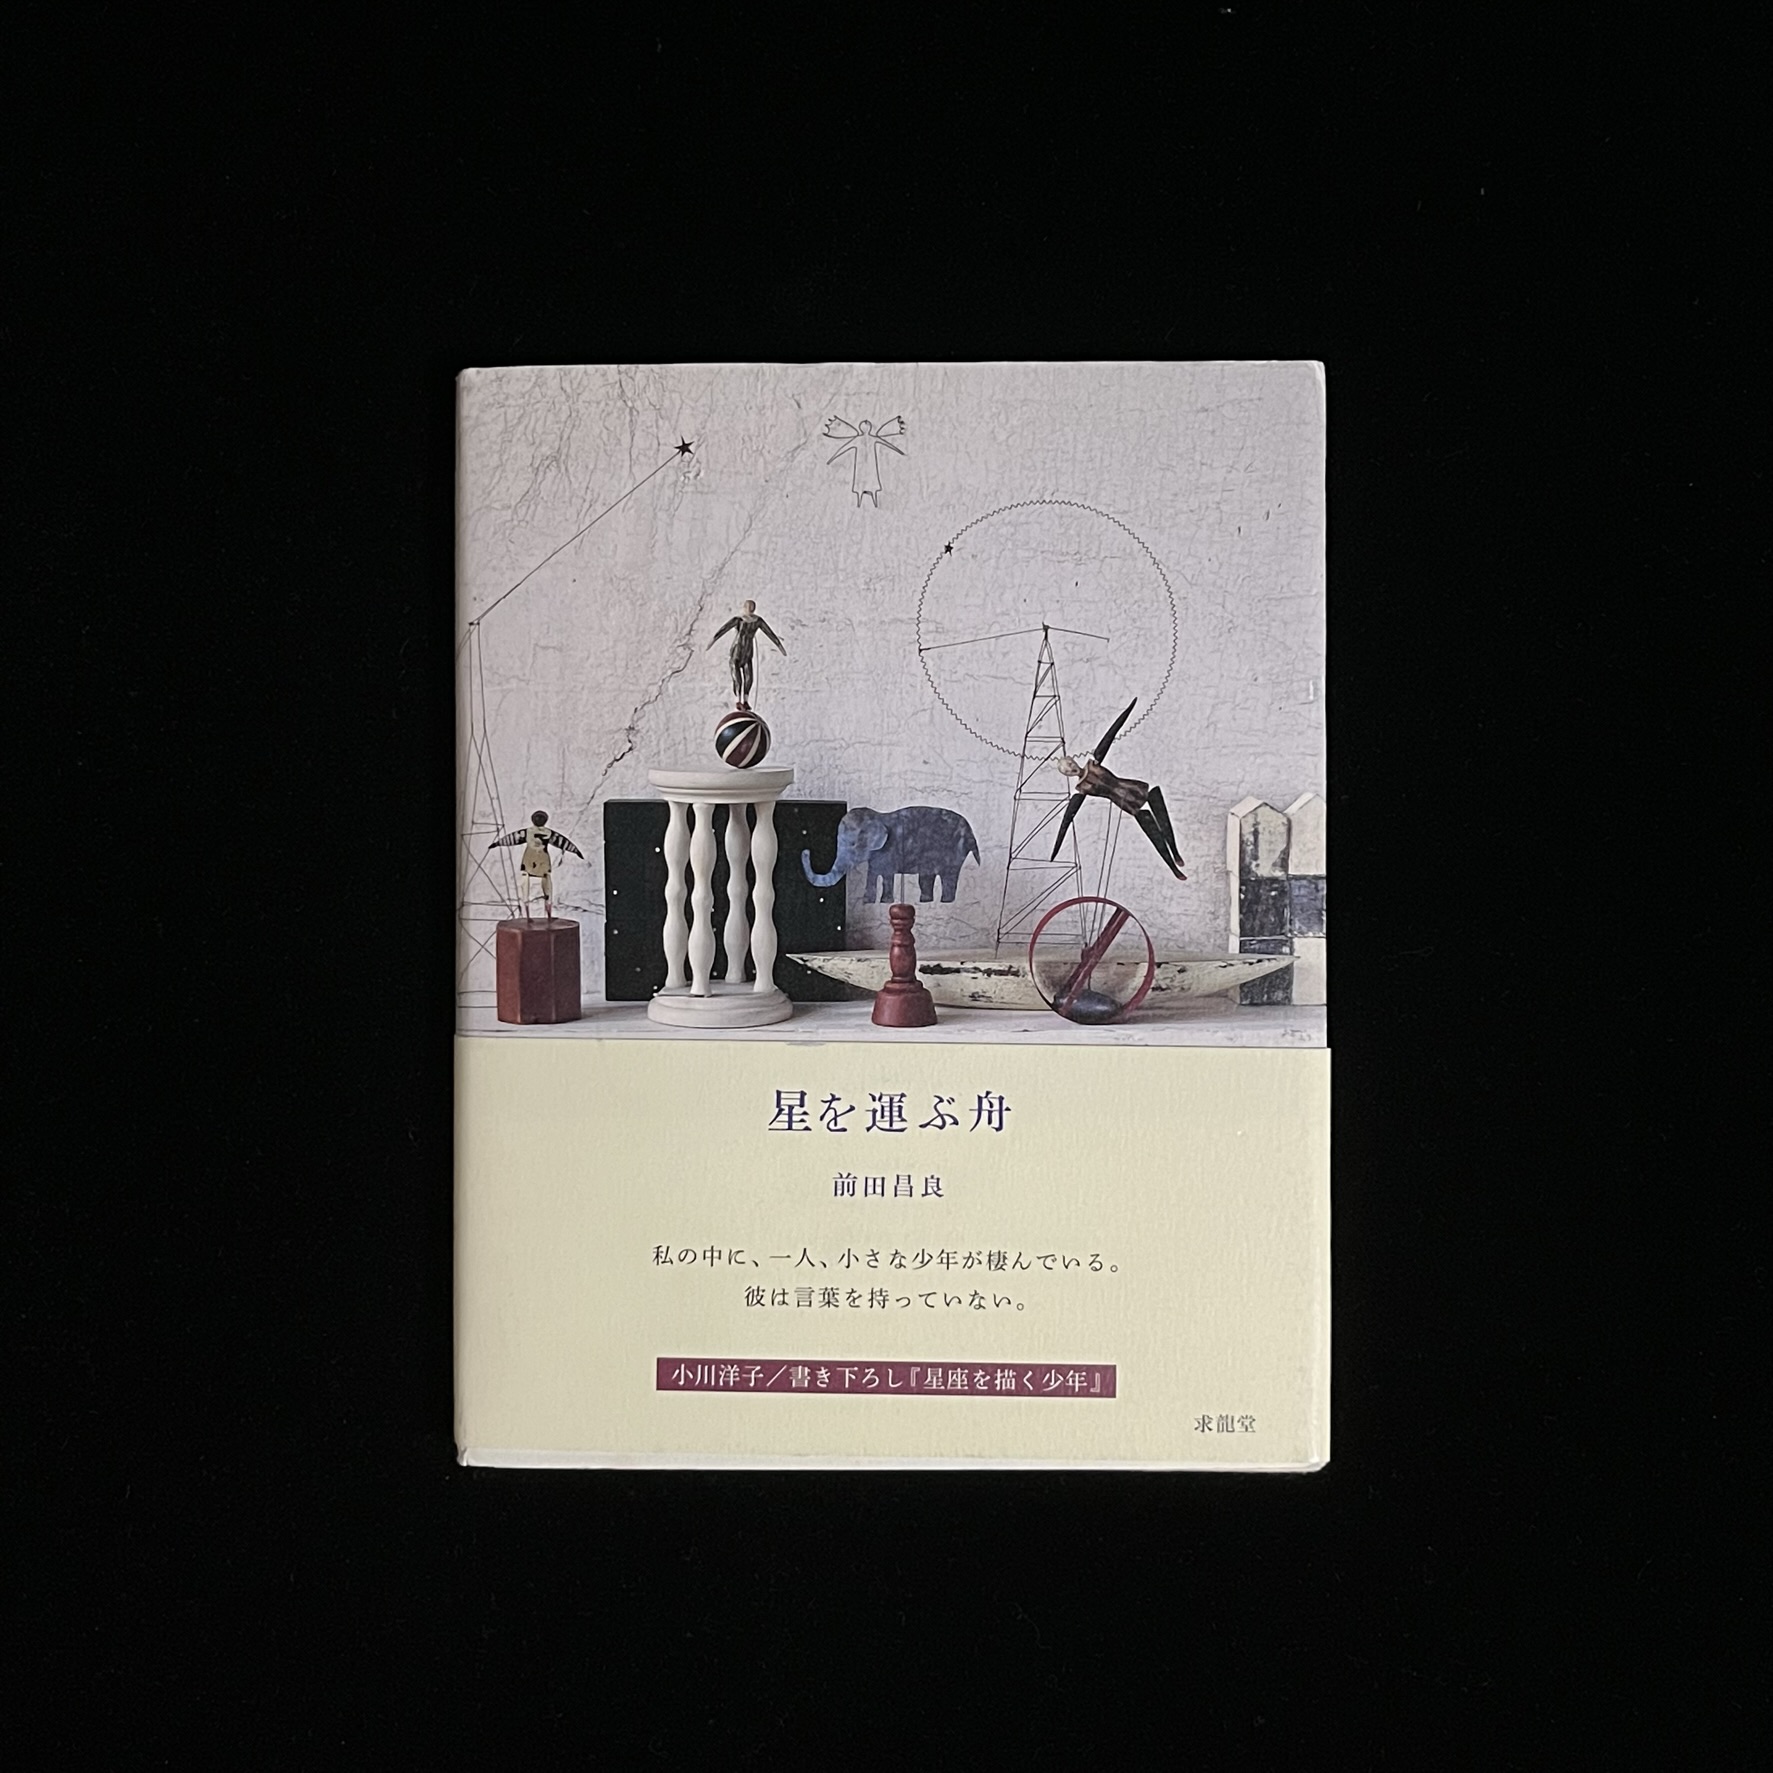 前田昌良さんの『星を運ぶ舟』の本の表紙の写真。前田さんの作品を集めており、玉乗りやゾウ、家などの作品が並べられています